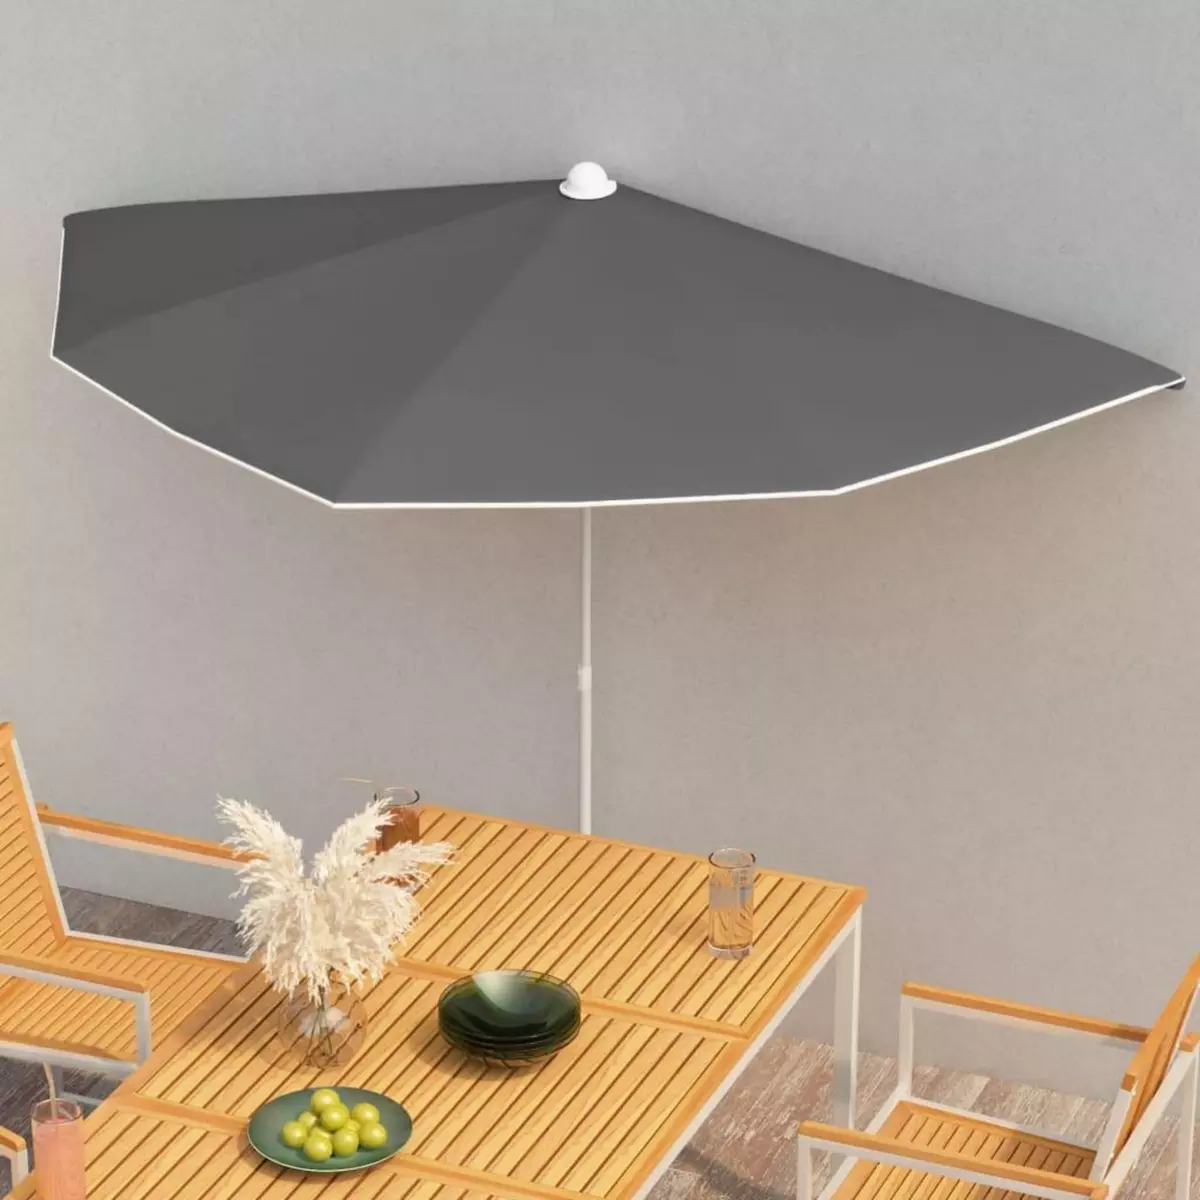 VIDAXL Demi-parasol de jardin avec mat 180x90 cm Anthracite